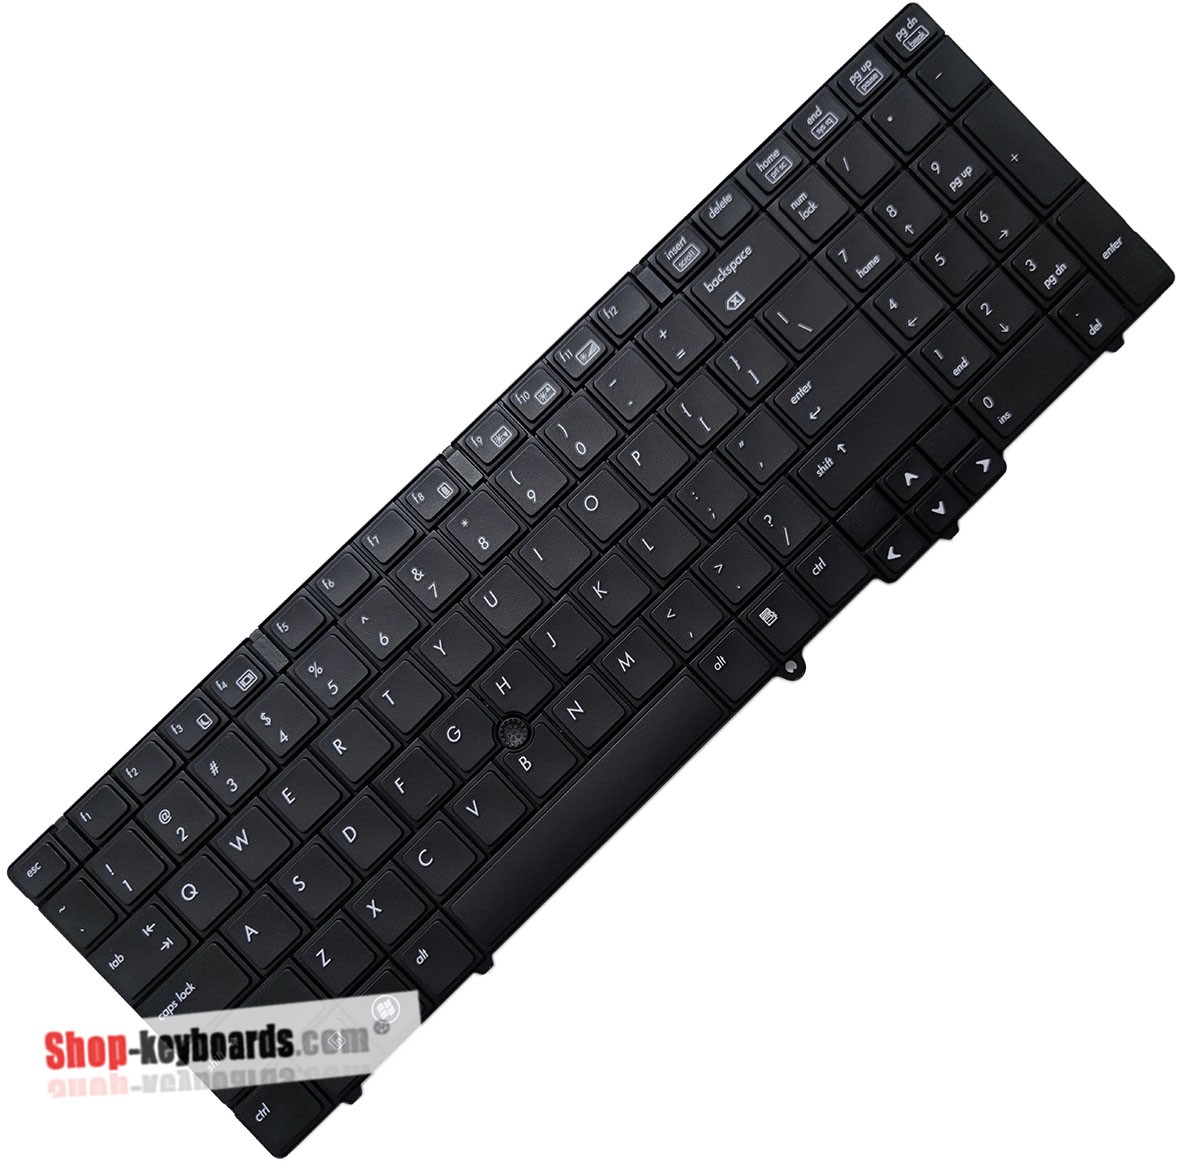 HP EliteBook 8540p Keyboard replacement